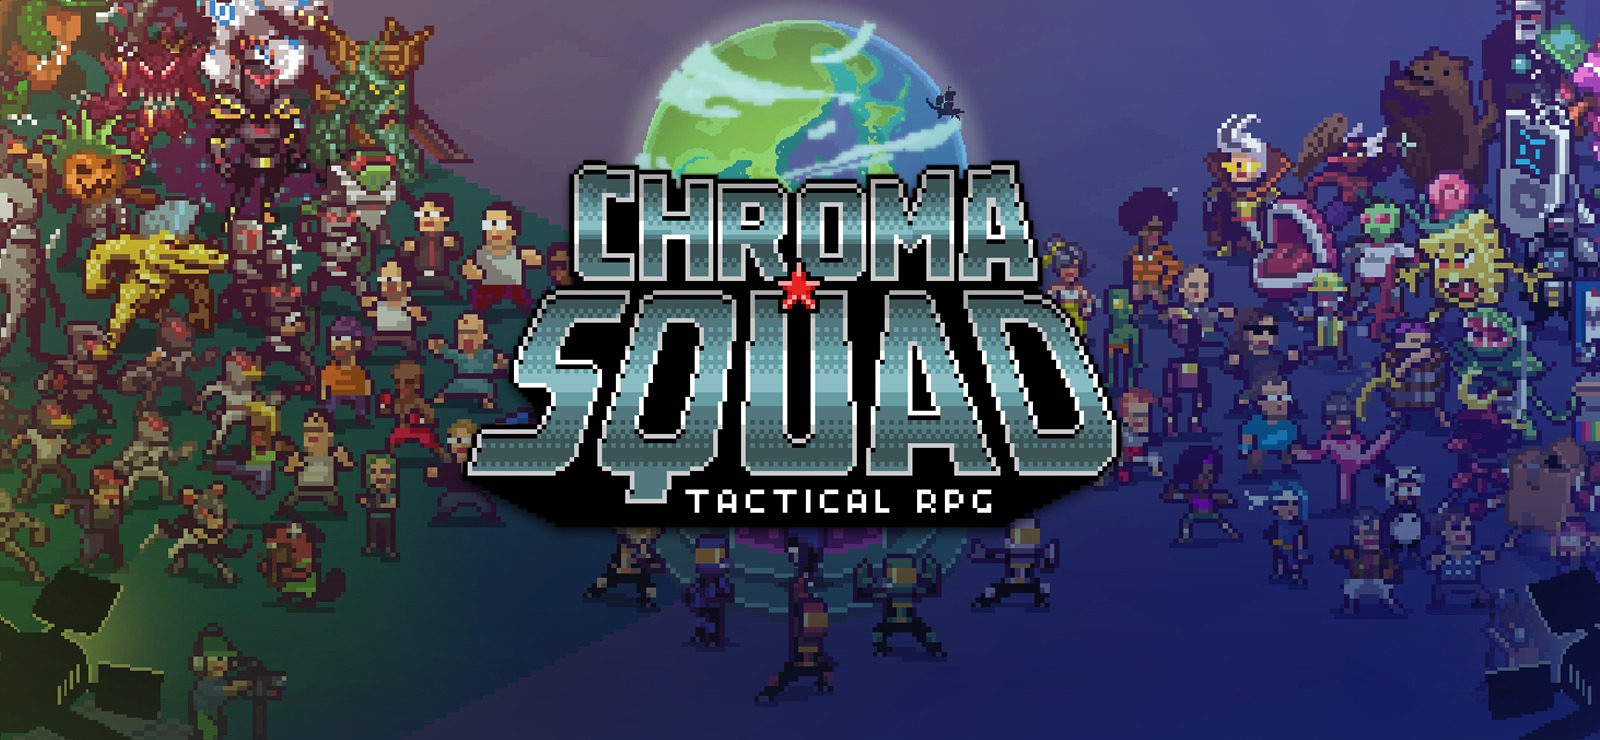 Chroma Squad Tactical RPG toma inspiración de Power Rangers en PS4 / Xbox One GamersRD